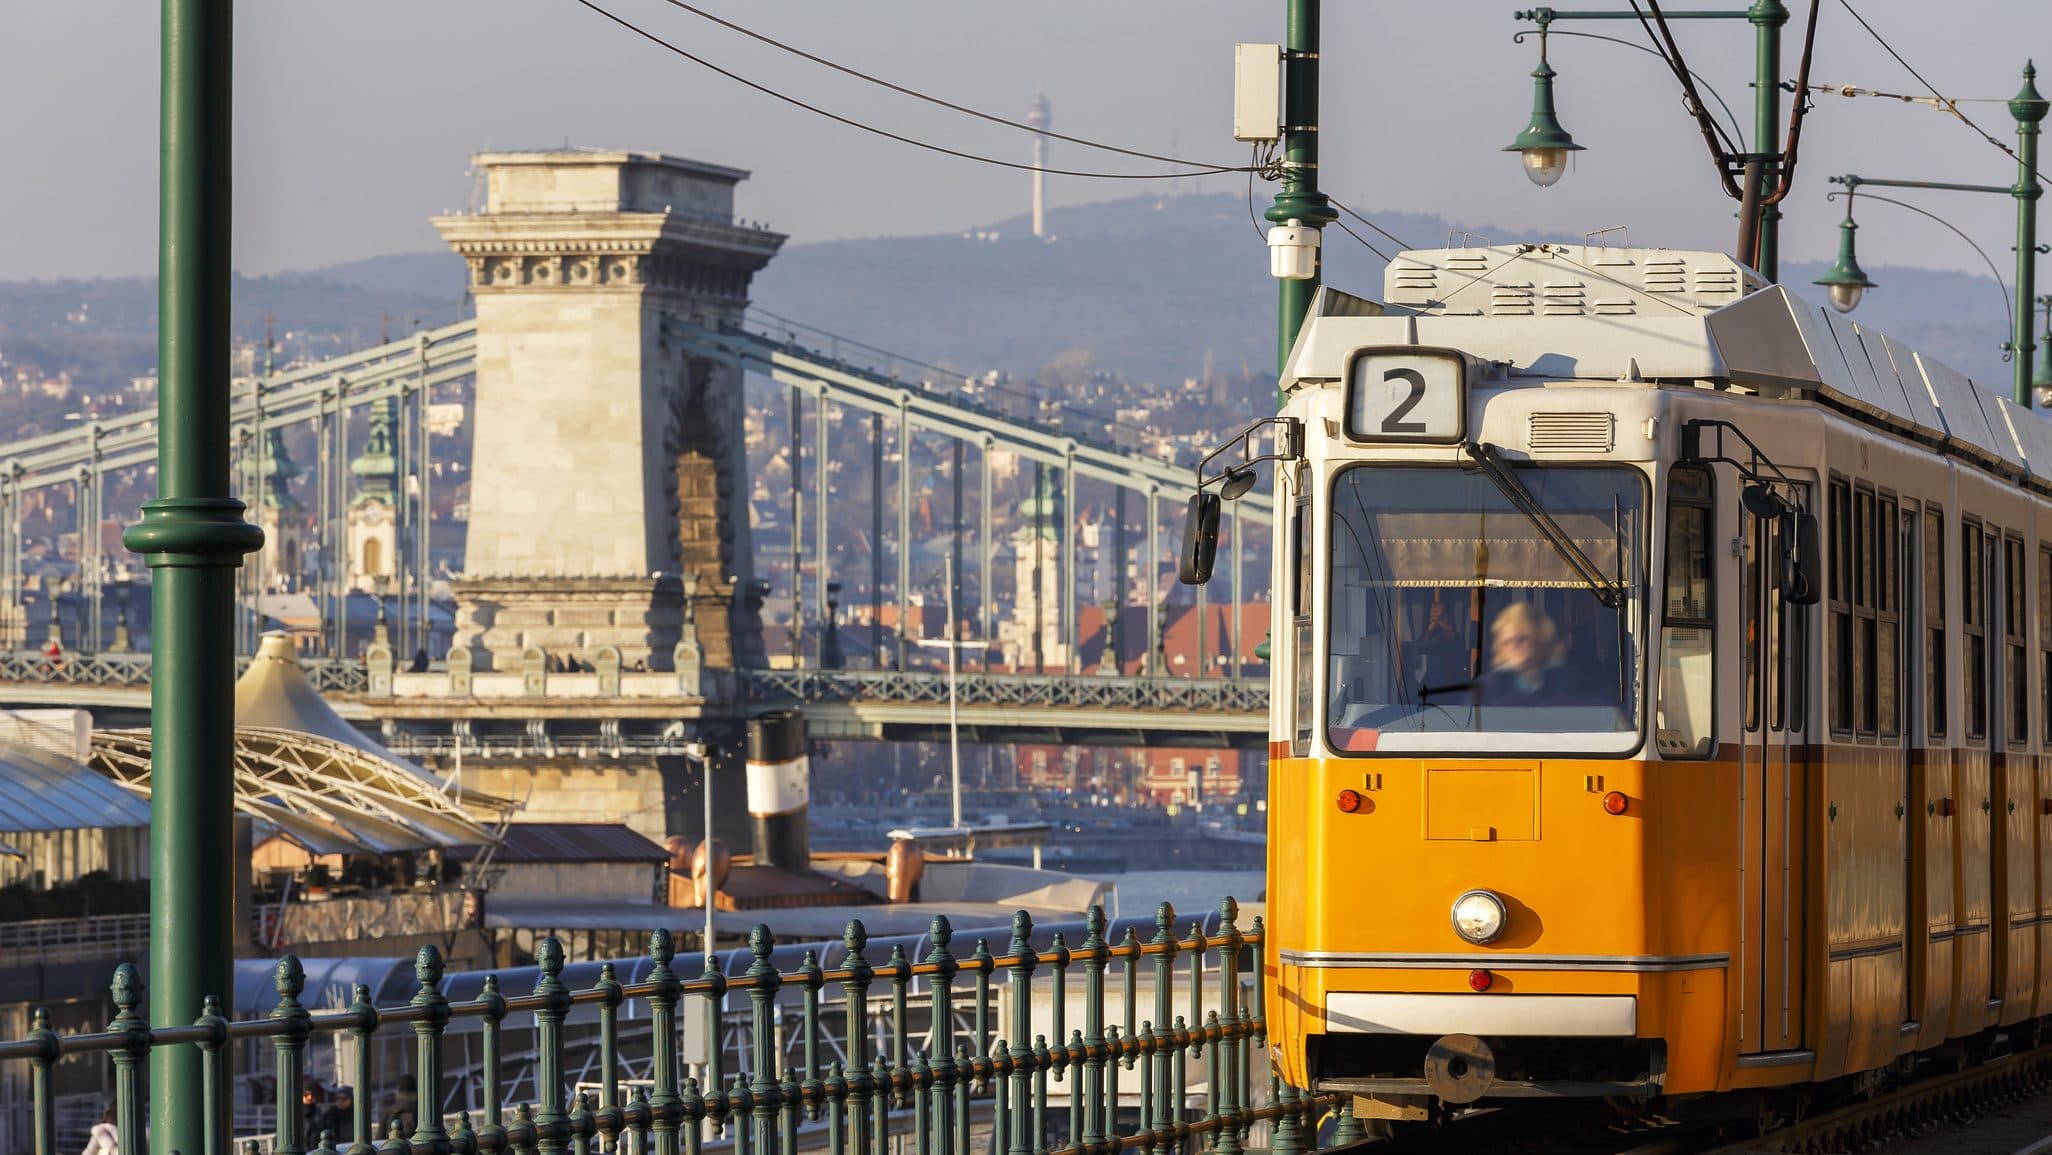 4-6-os villamos, 7-es busz, földalatti – ikonikus budapesti járatok